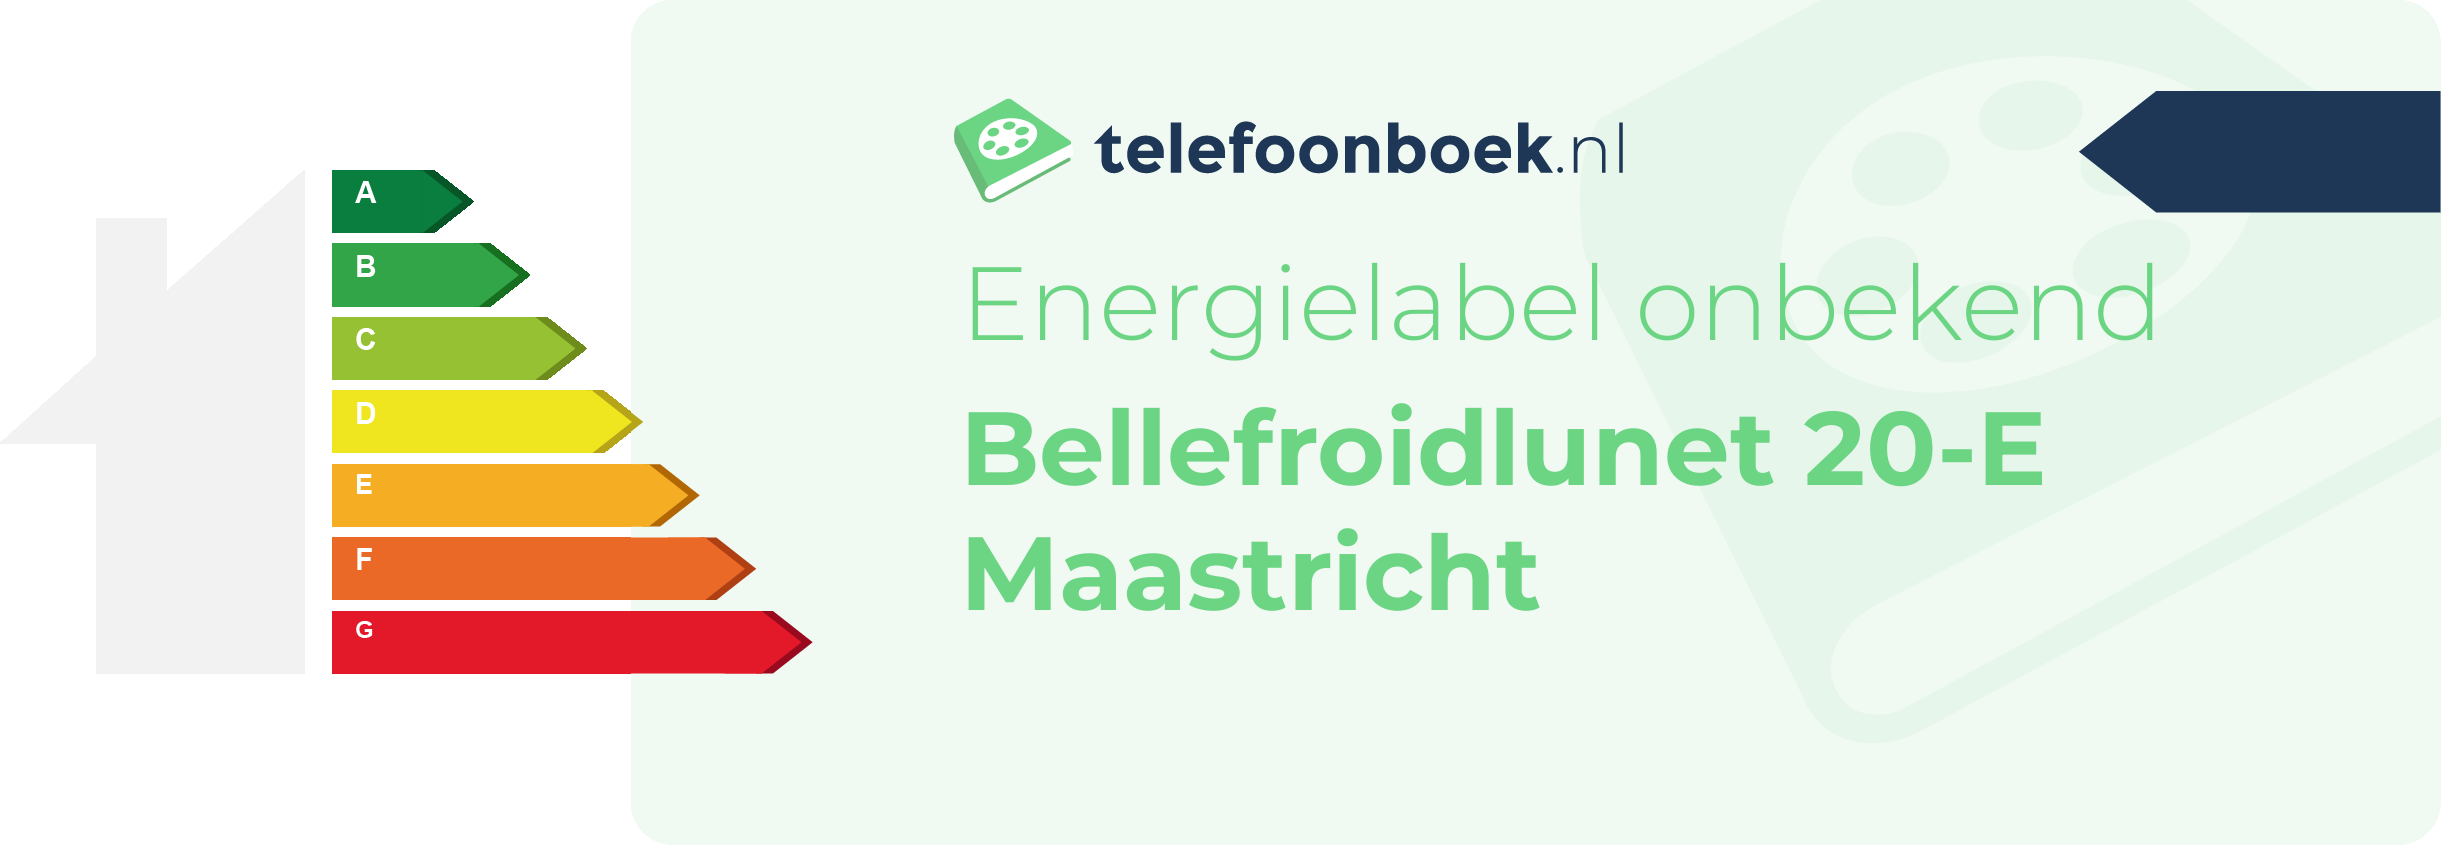 Energielabel Bellefroidlunet 20-E Maastricht